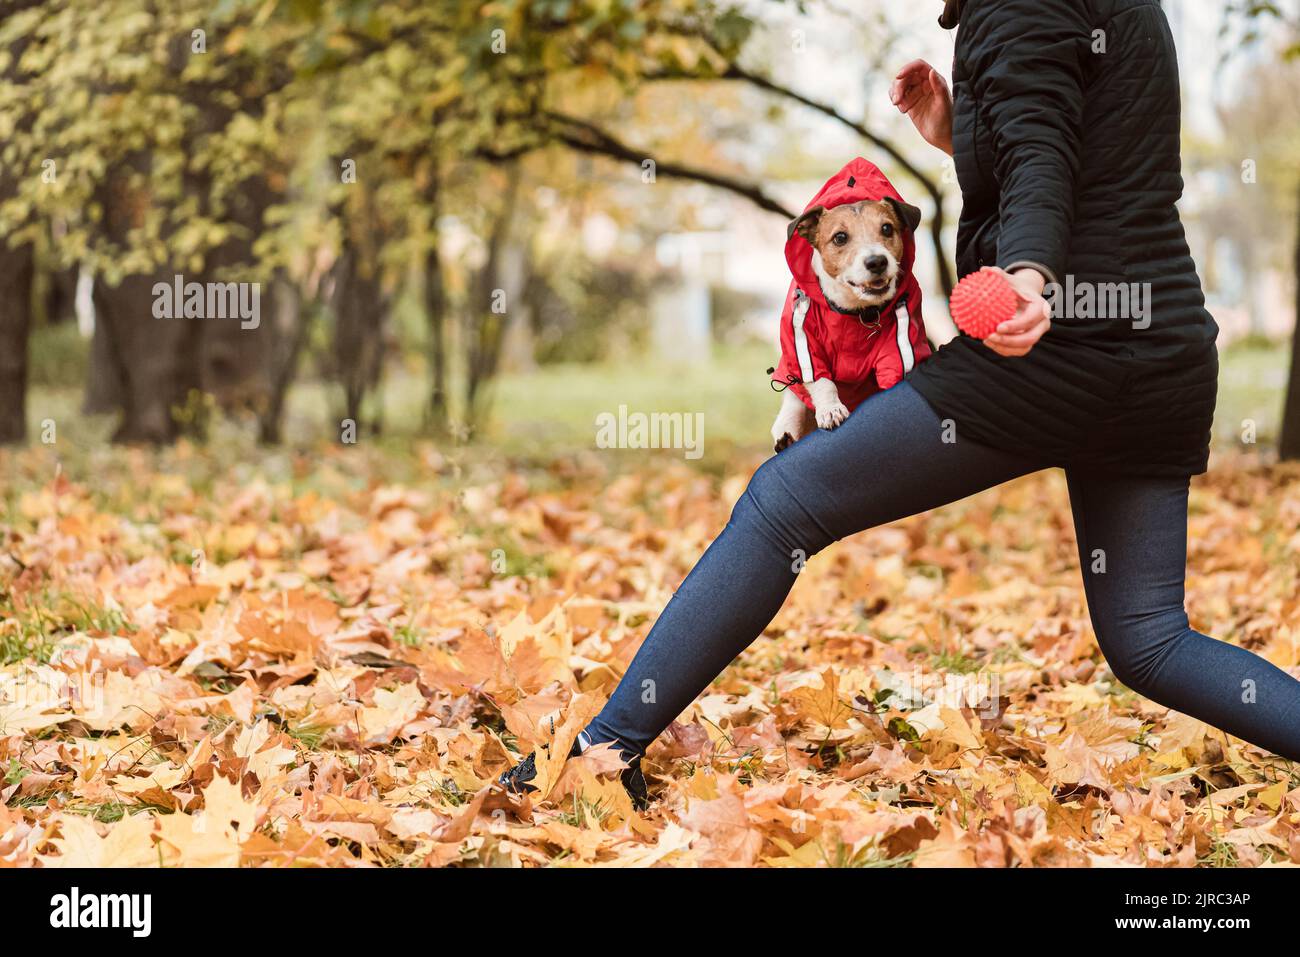 Frau spielt aktiv mit Hund, um es gesund und fit zu halten. Herbsttag im Park. Stockfoto